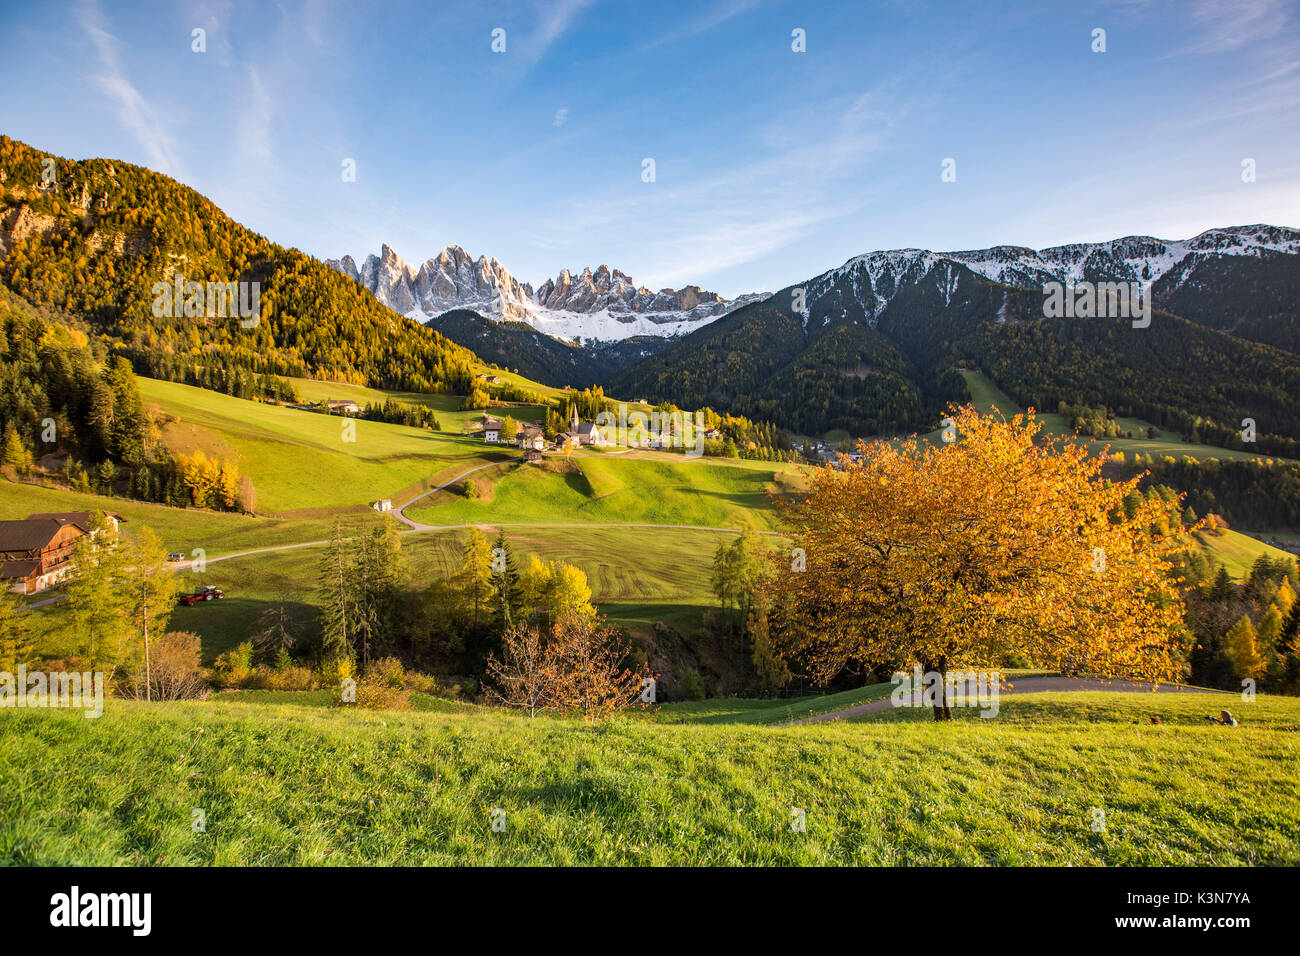 Herbstliche Kirschbaum mit Santa Maddalena Dorf und Geisler Dolomiten Gipfeln im Hintergrund. Santa Maddalena, Funes, Bozen, Trentino Alto Adige, Südtirol, Italien, Europa. Stockfoto